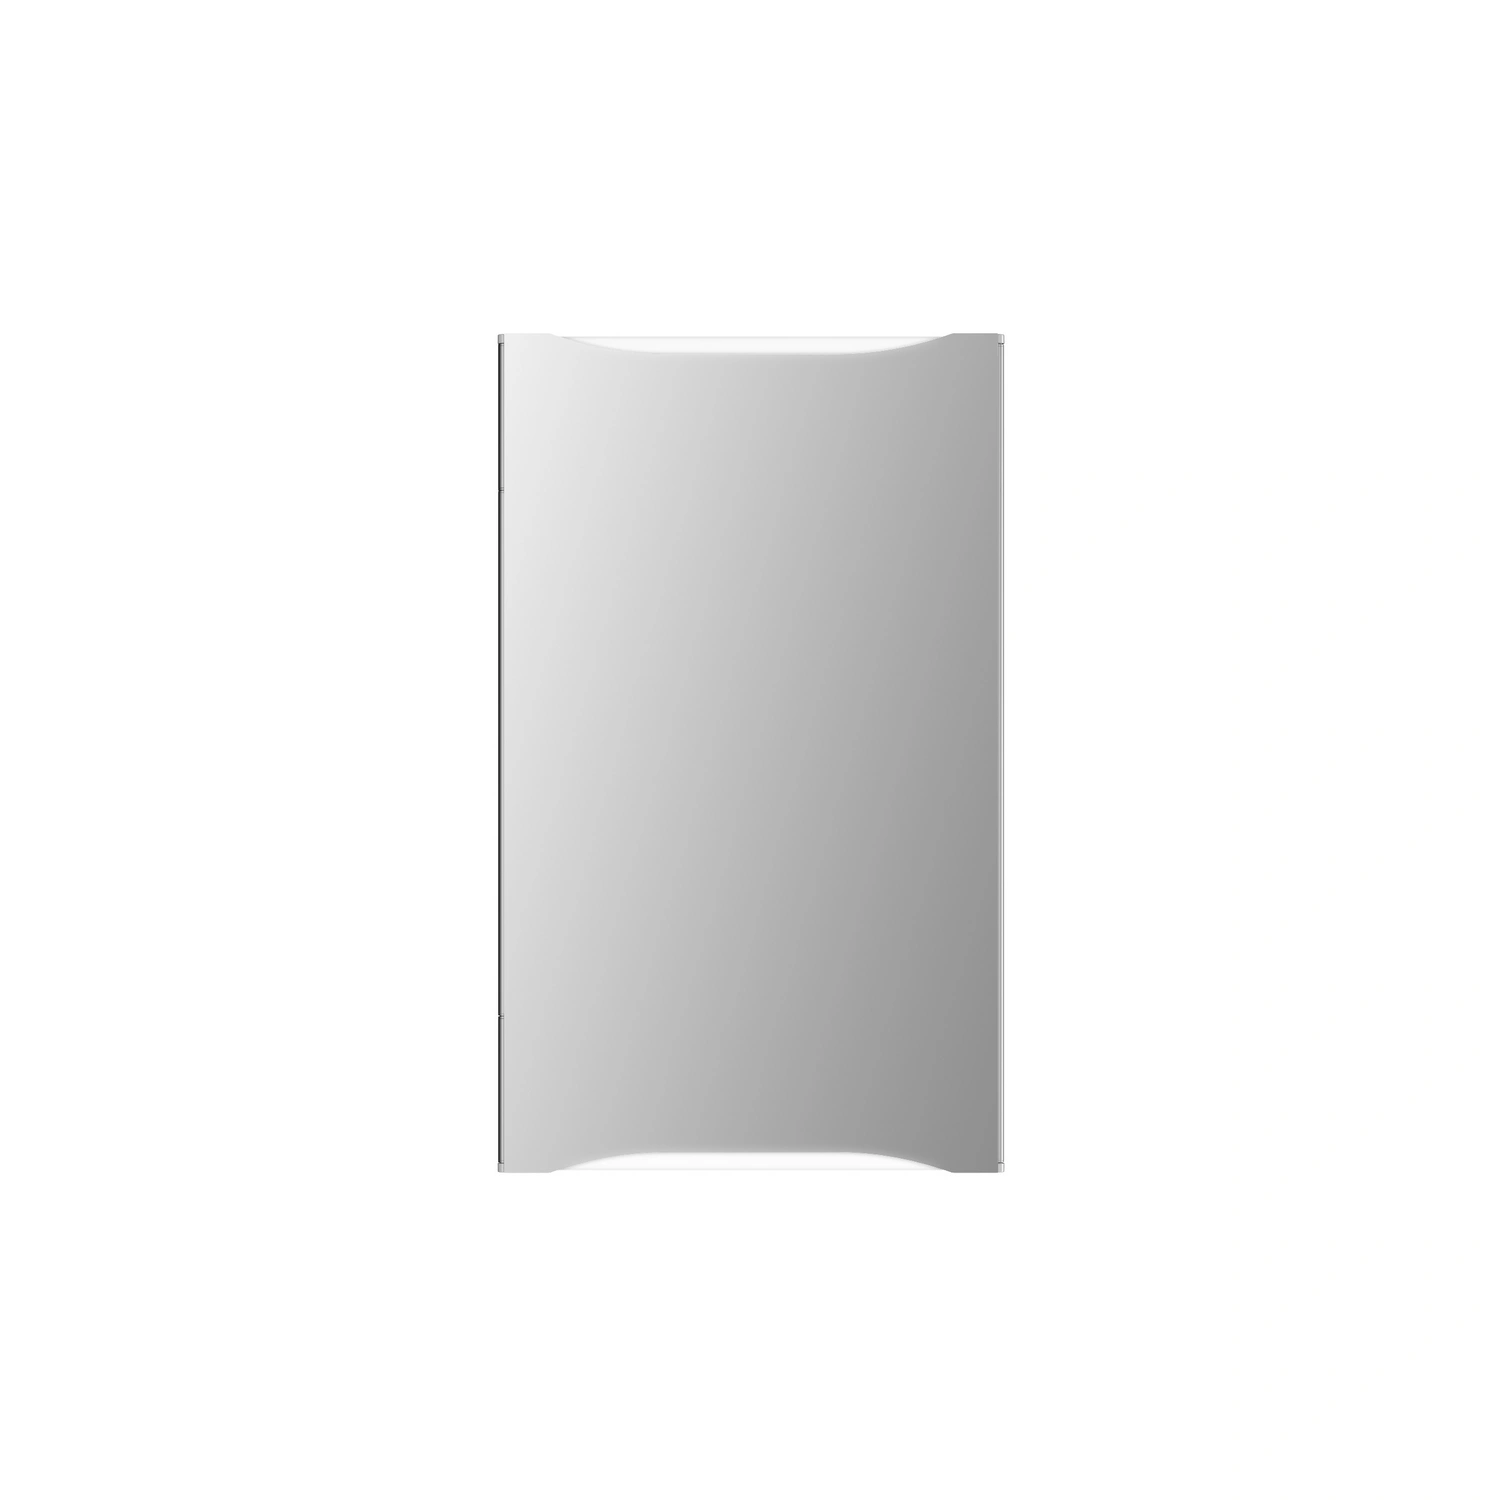 JOKEY Spiegelschrank, BxHxT: 44,6 x 73,5 x 16,8 cm, transparent/weiß